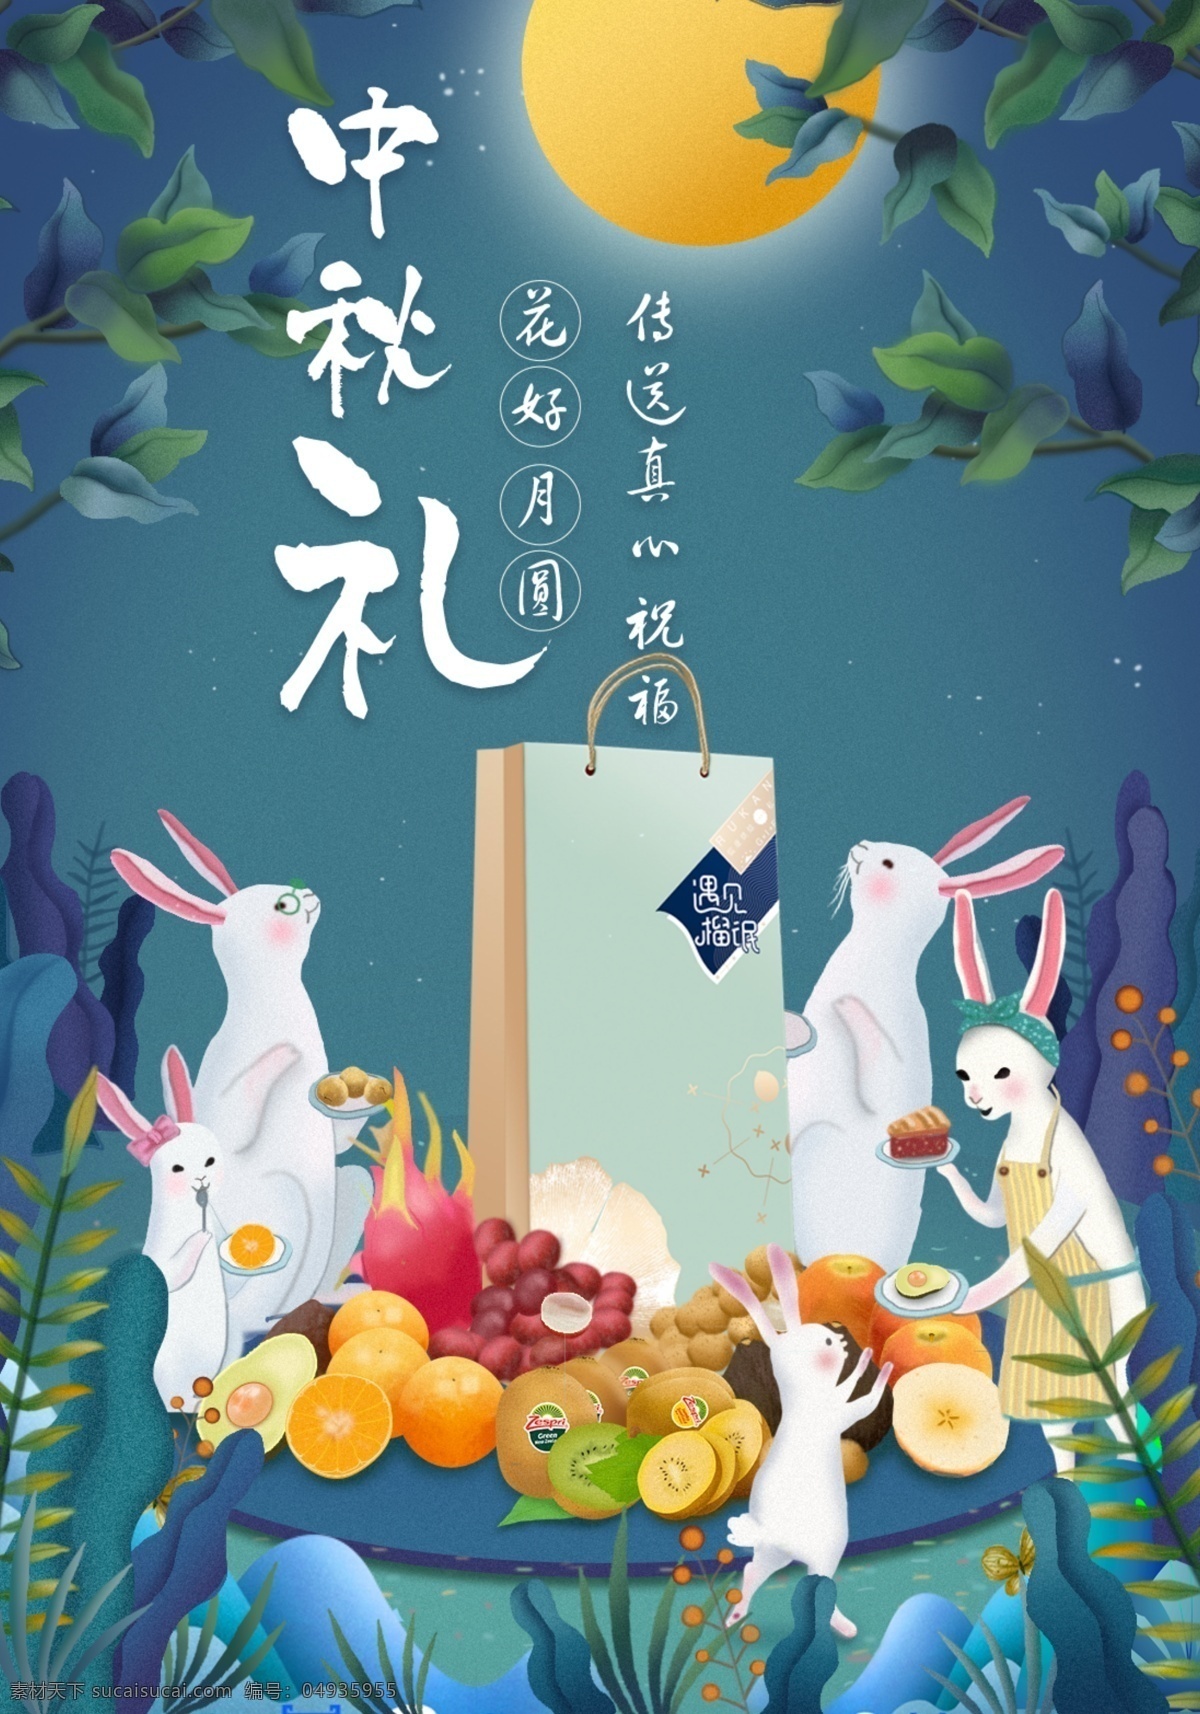 中秋 礼品 购物 兔子 一家 手绘 佳节 礼盒 插画 明月 水果大餐